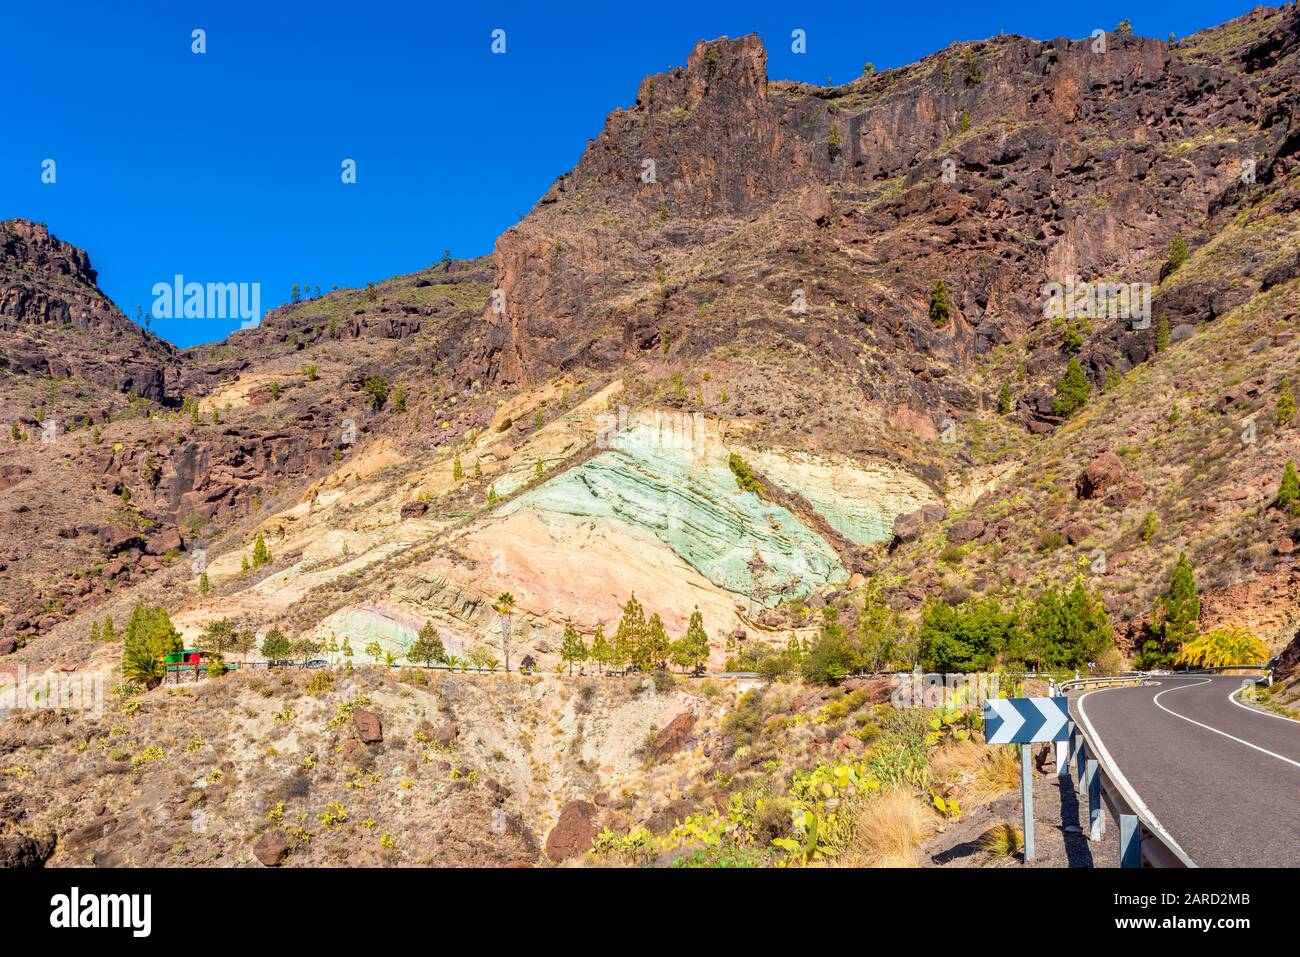 Fuente De Los Azulejos Formazione Rocciosa A Gran Canaria, Isole Canarie, Spagna. Le rocce colorate sono un effetto collaterale delle eruzioni idromagmatiche. Foto Stock